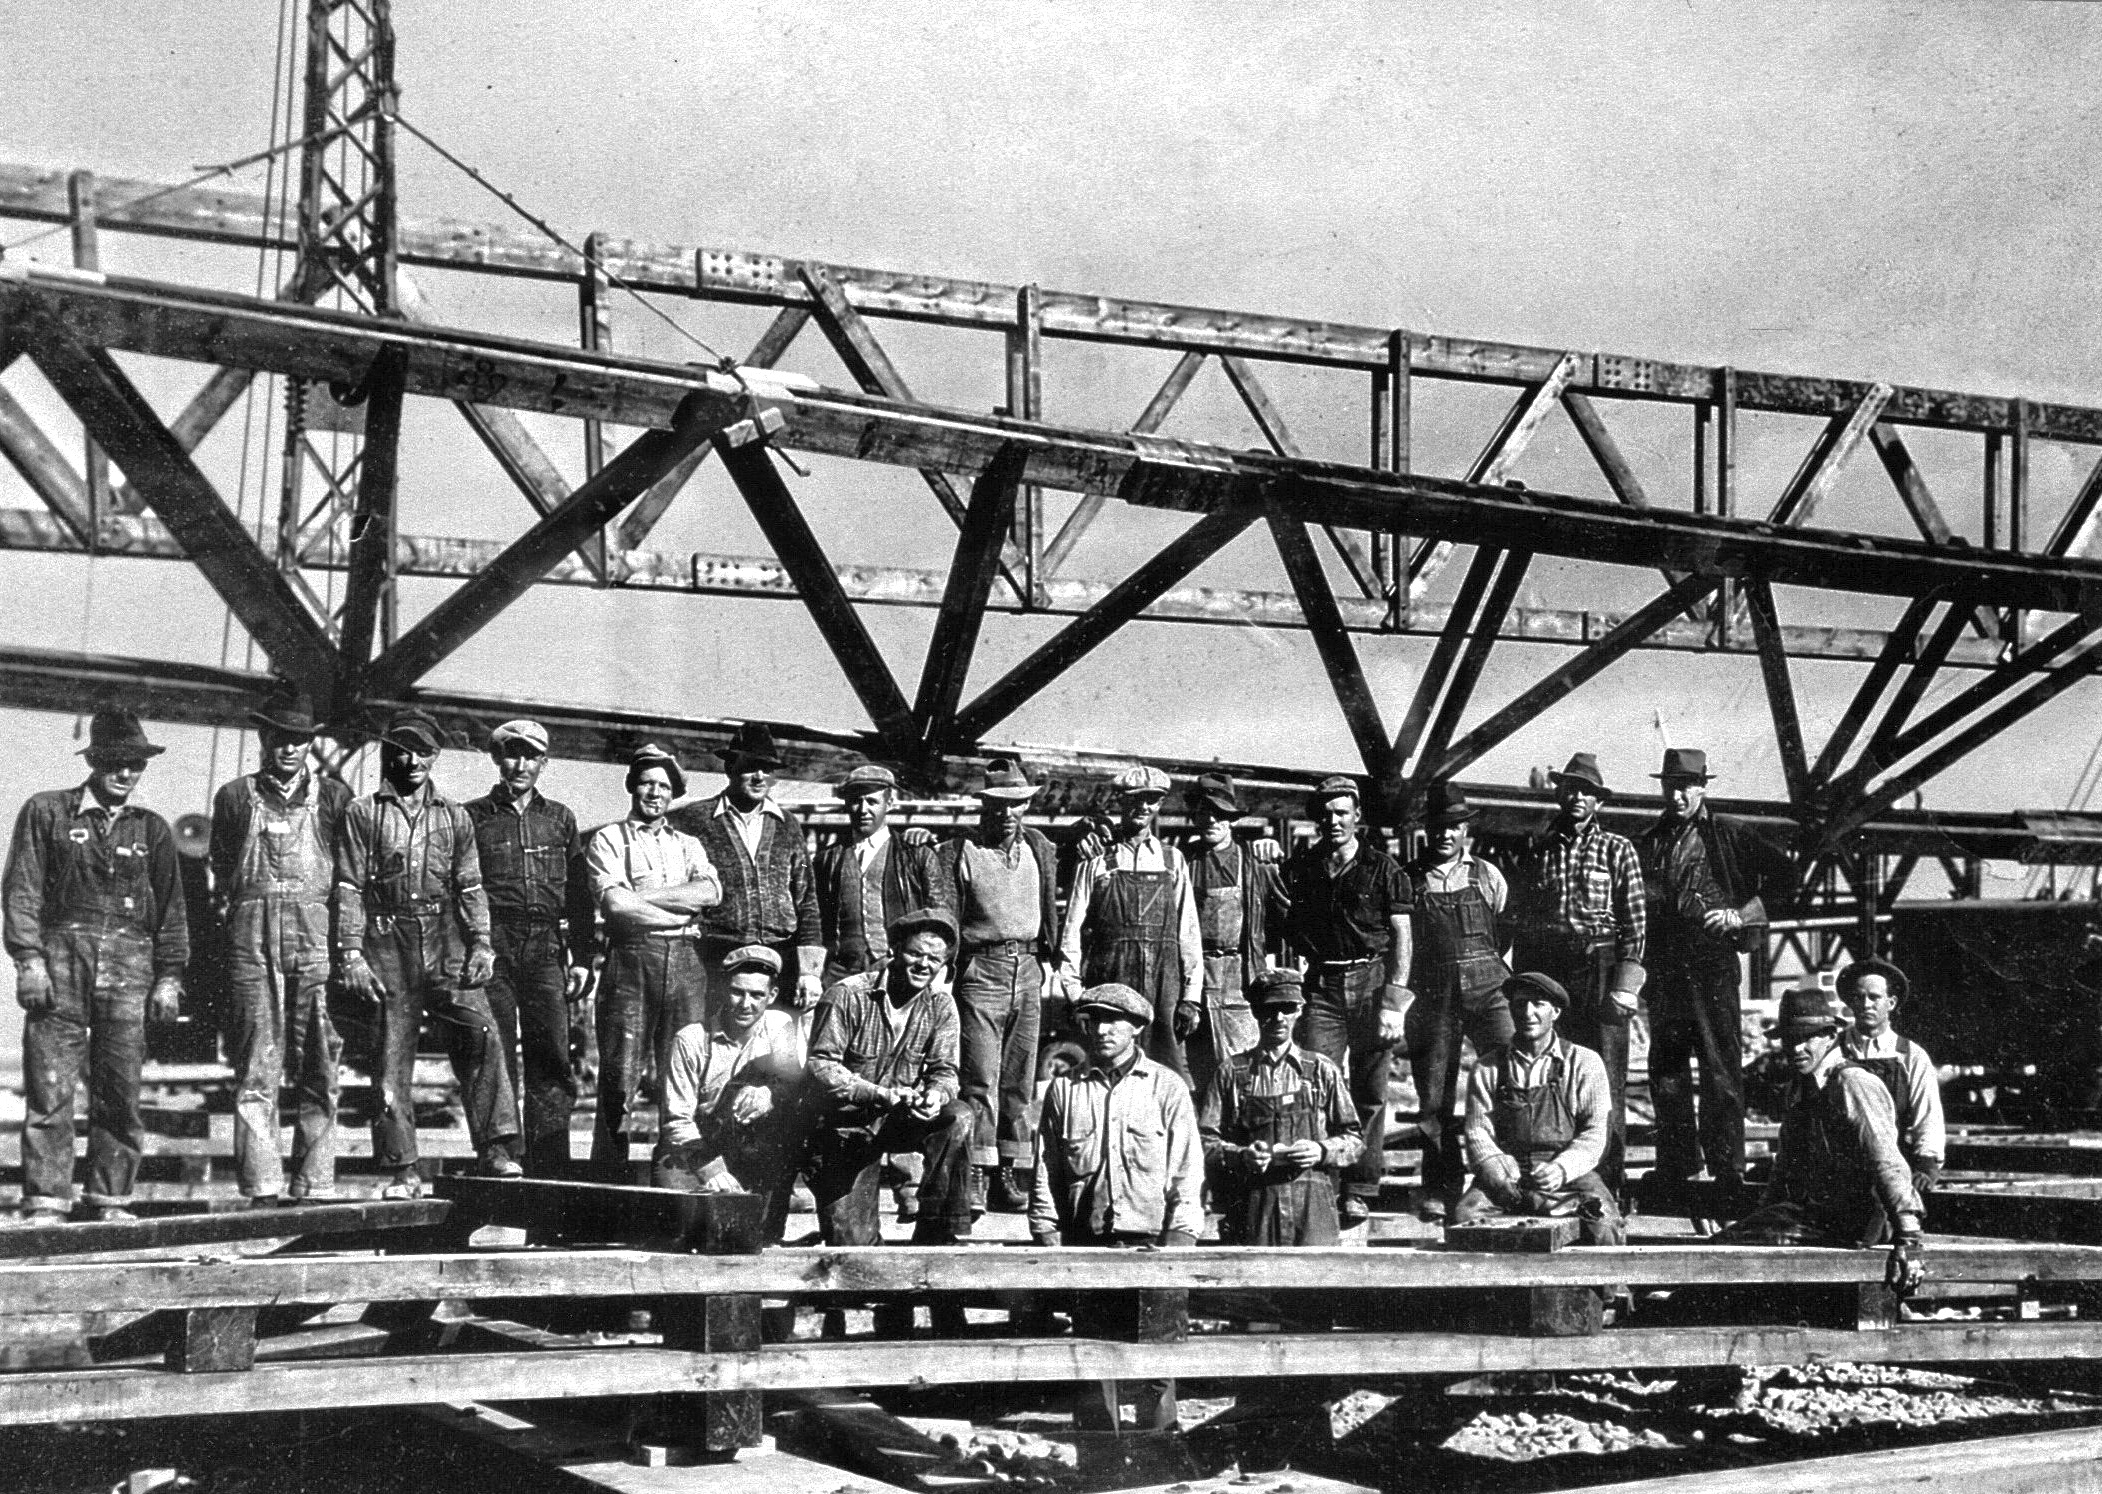 Une équipe de travaux de 21 hommes devant le chantier d’un hangar